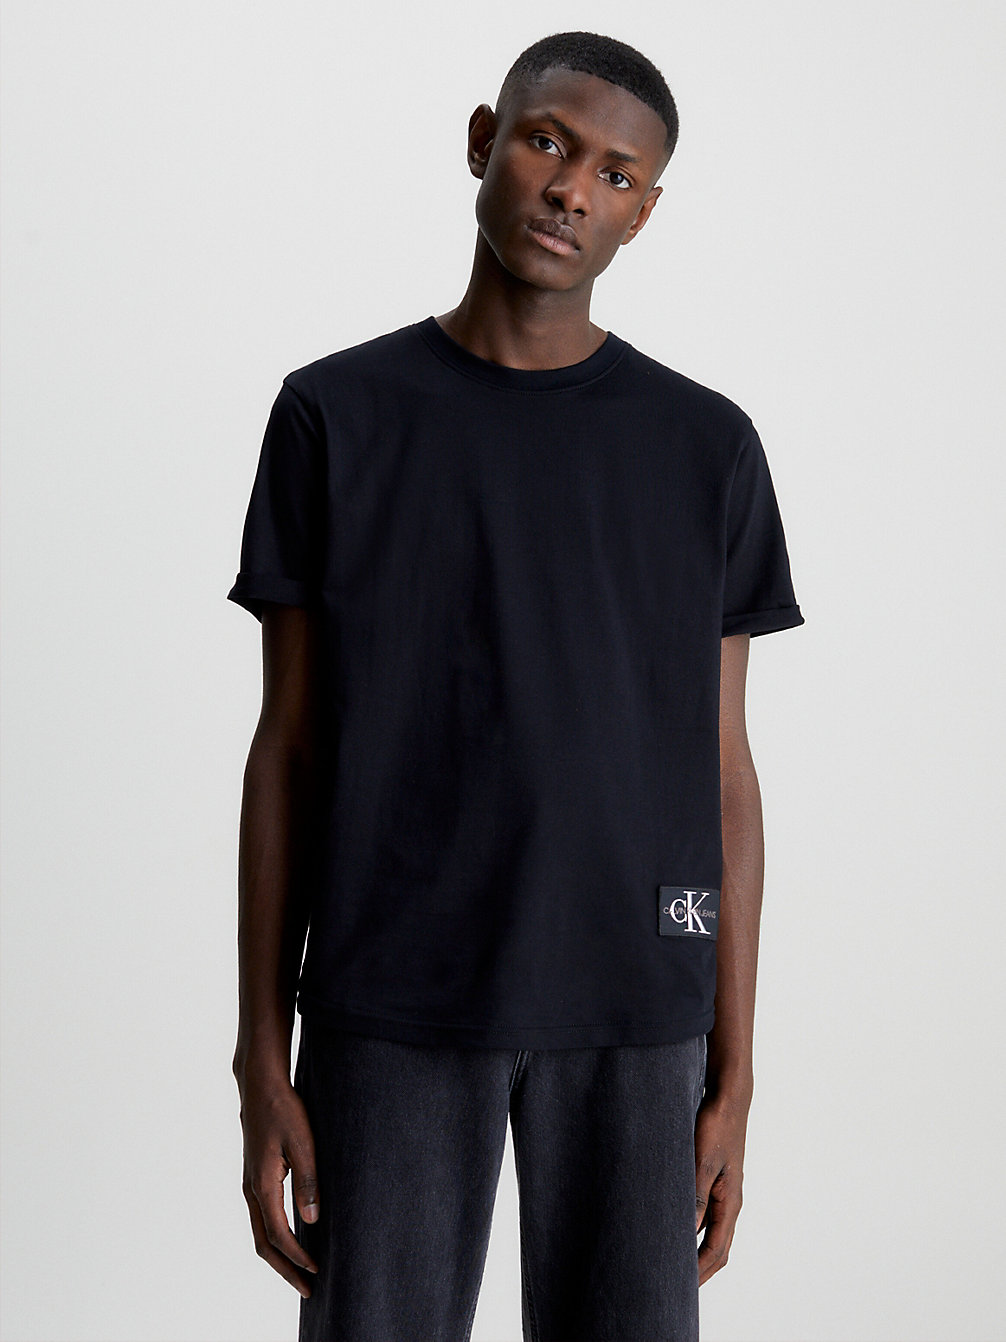 CK BLACK Badge-T-Shirt Aus Bio-Baumwolle undefined Herren Calvin Klein